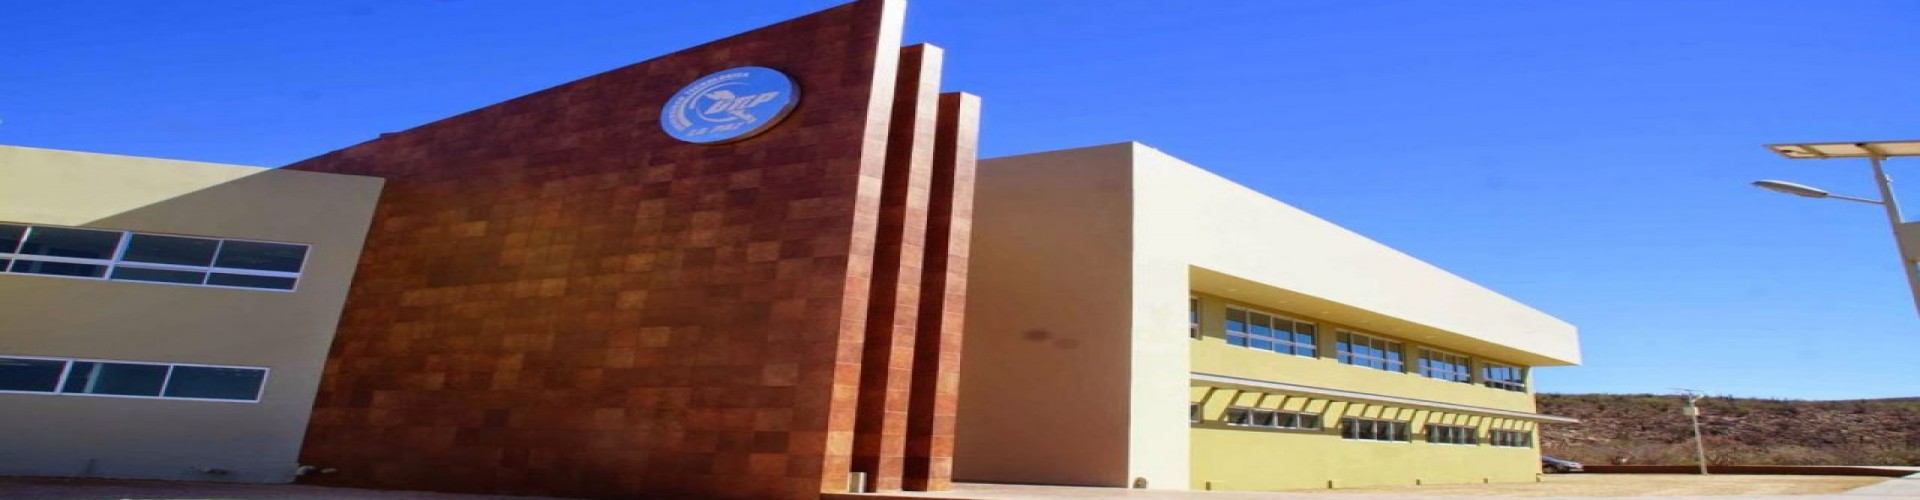 Conoce la Universidad Tecnológica de La Paz y sus instalaciones